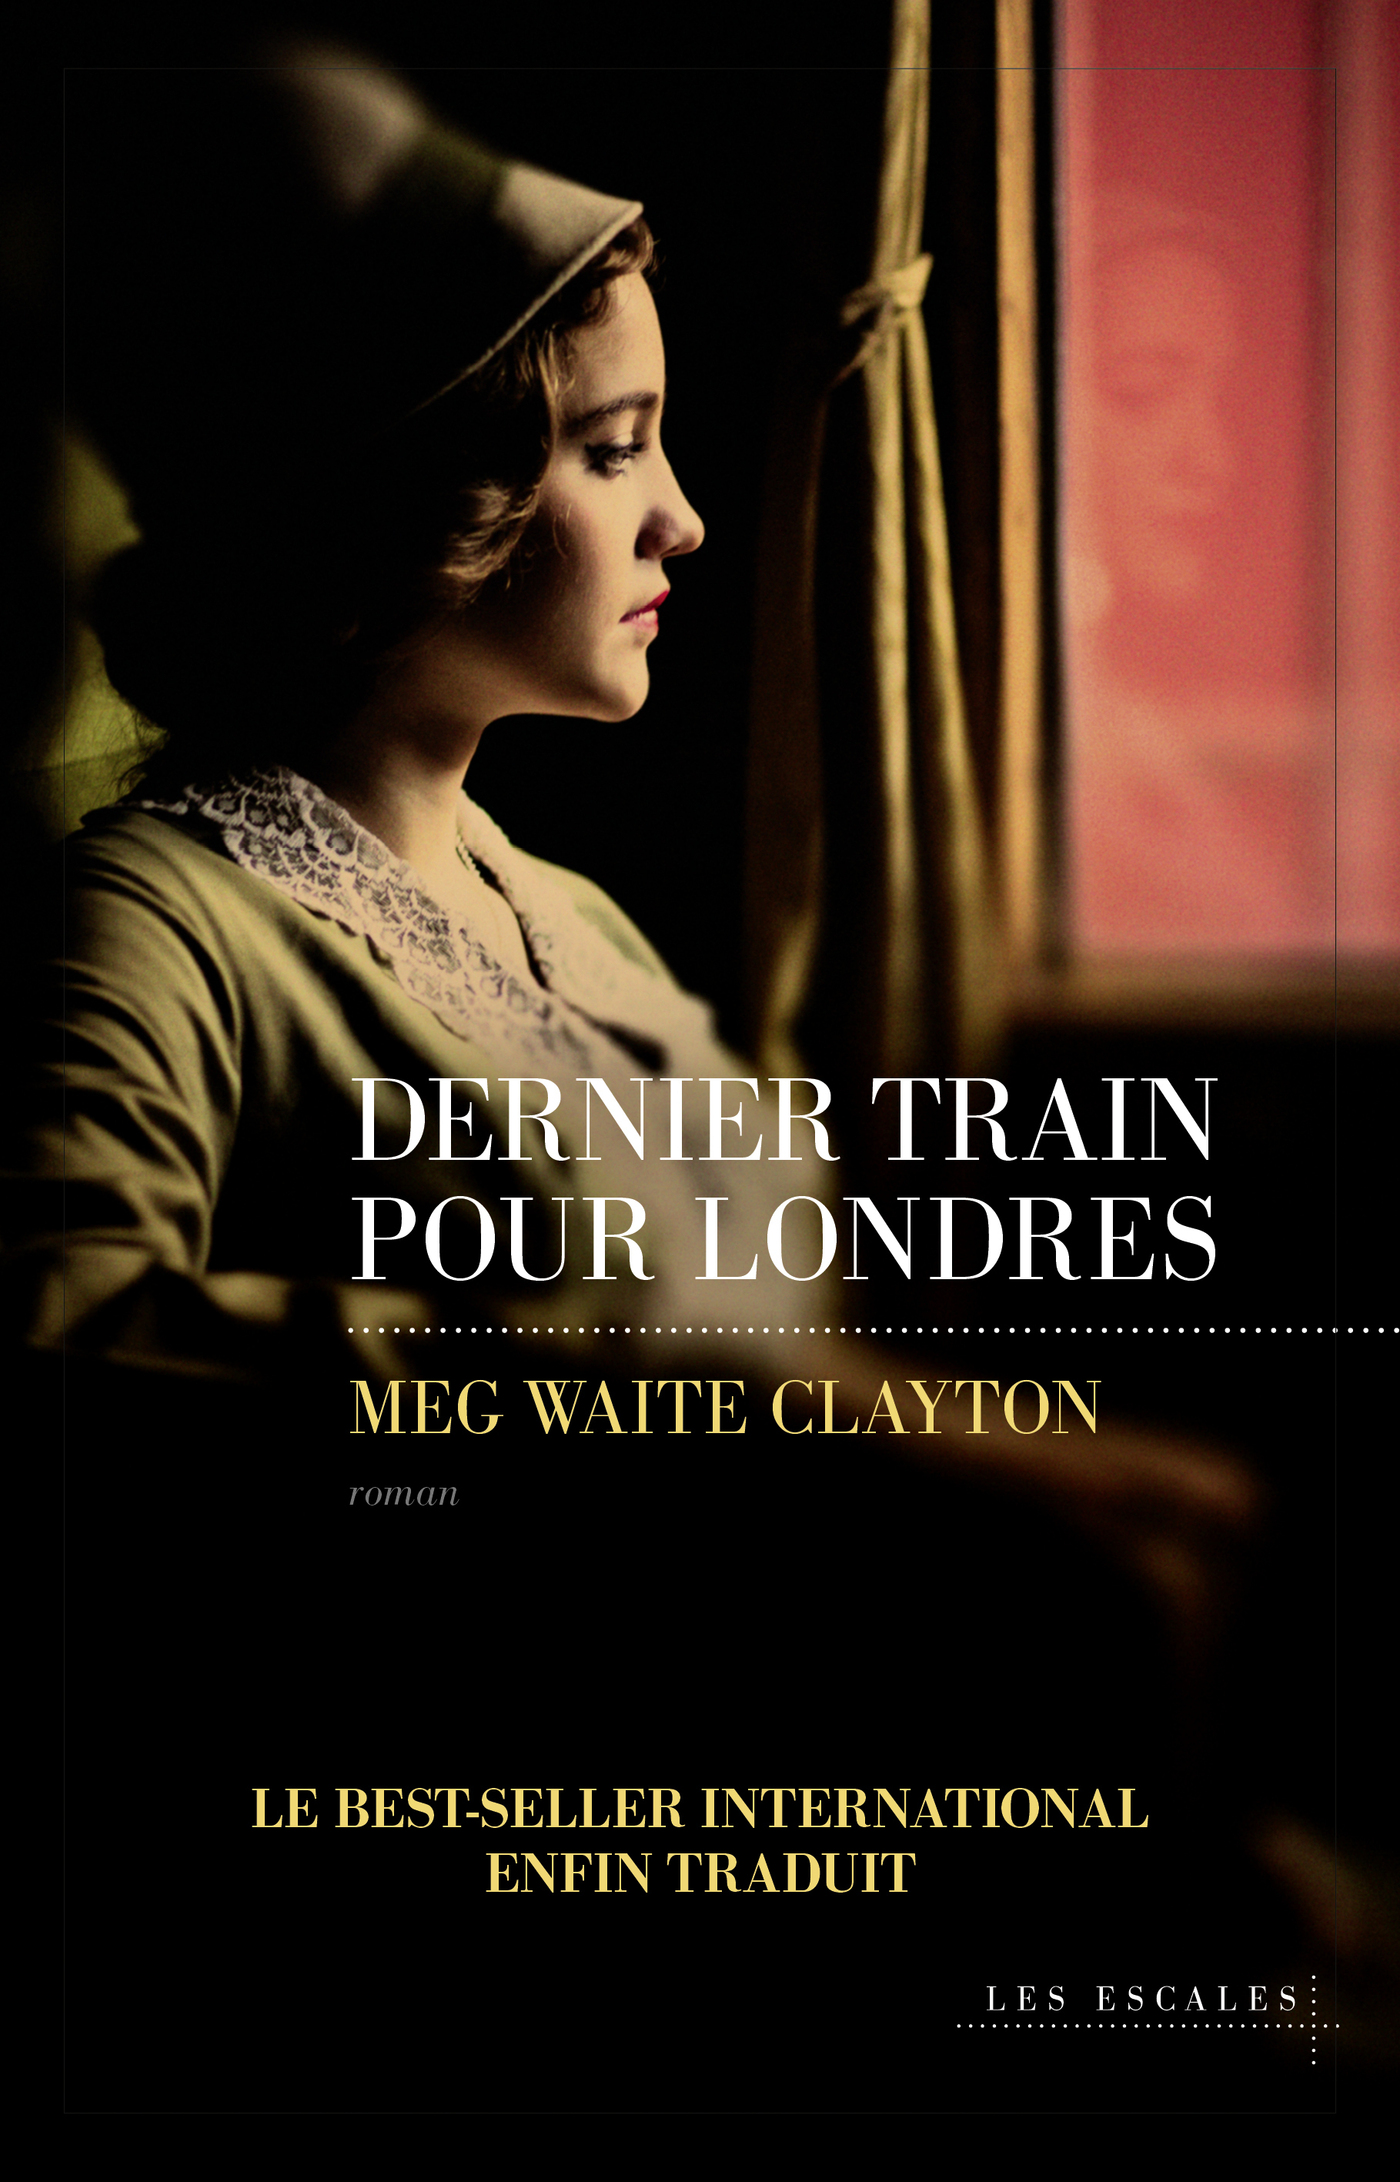 Afficher "Dernier train pour Londres"